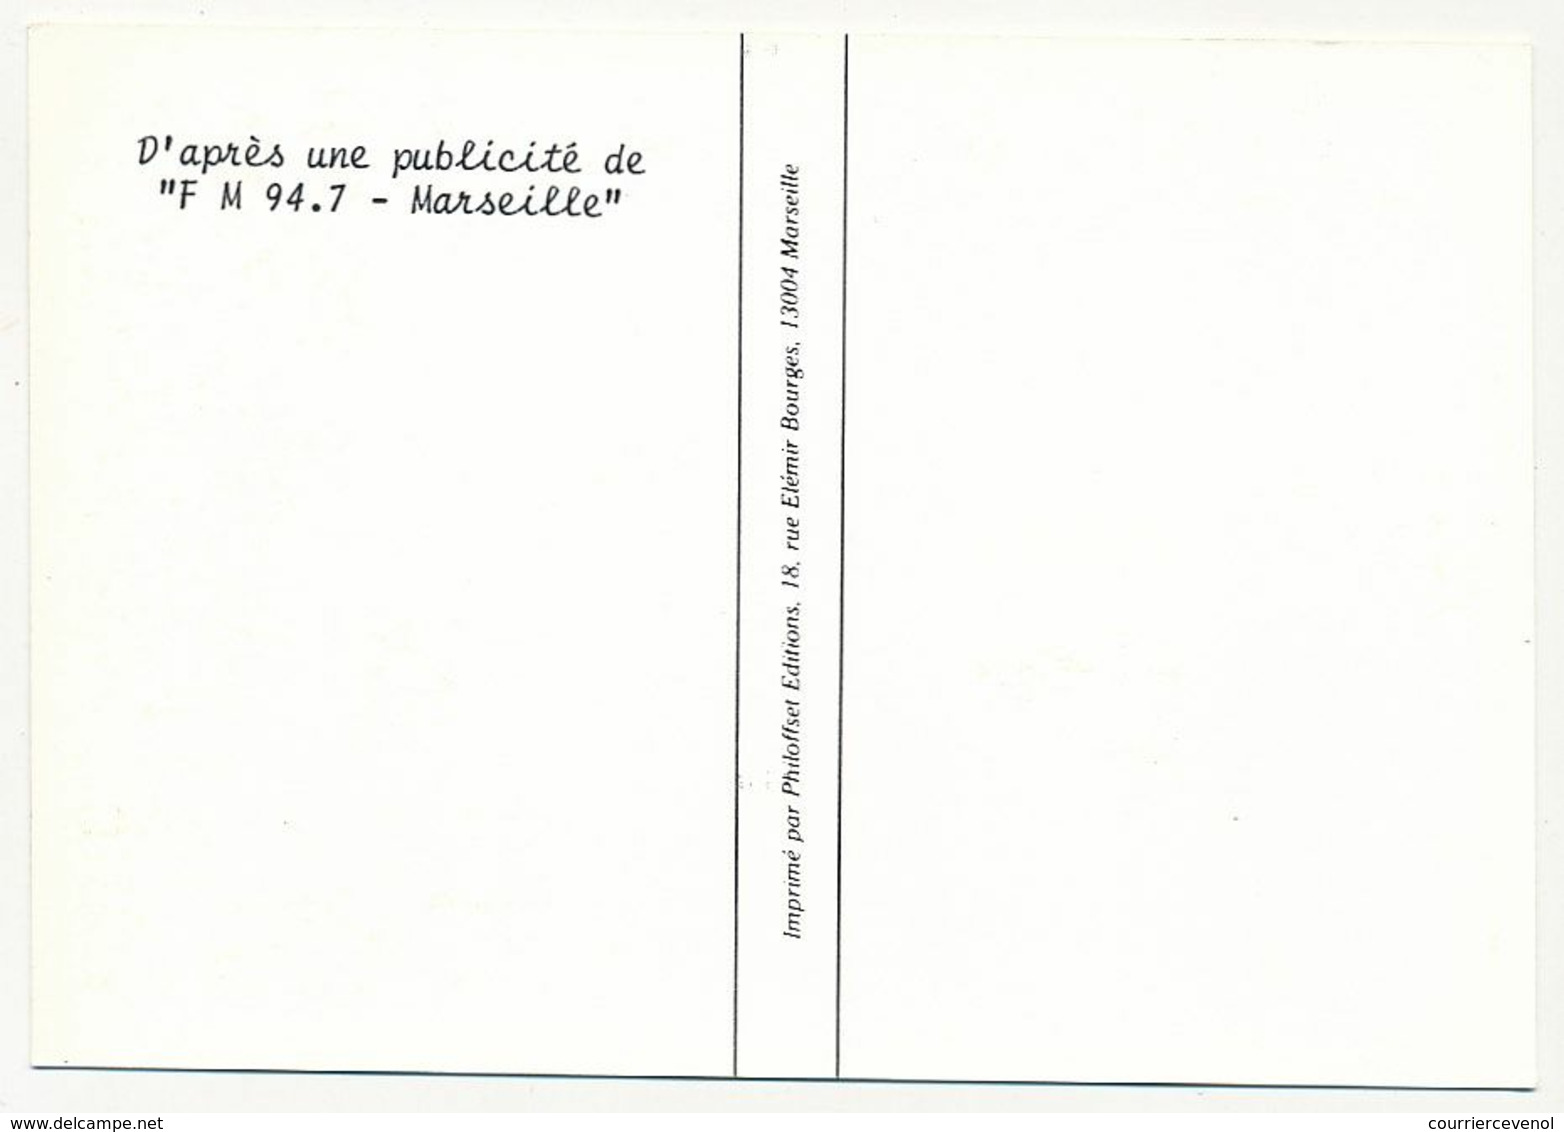 FRANCE - 3 Cartes Avec Cachets De La 16° Foire Internationale De Marseille - Sept / Octo 1984 - Cachets Commémoratifs